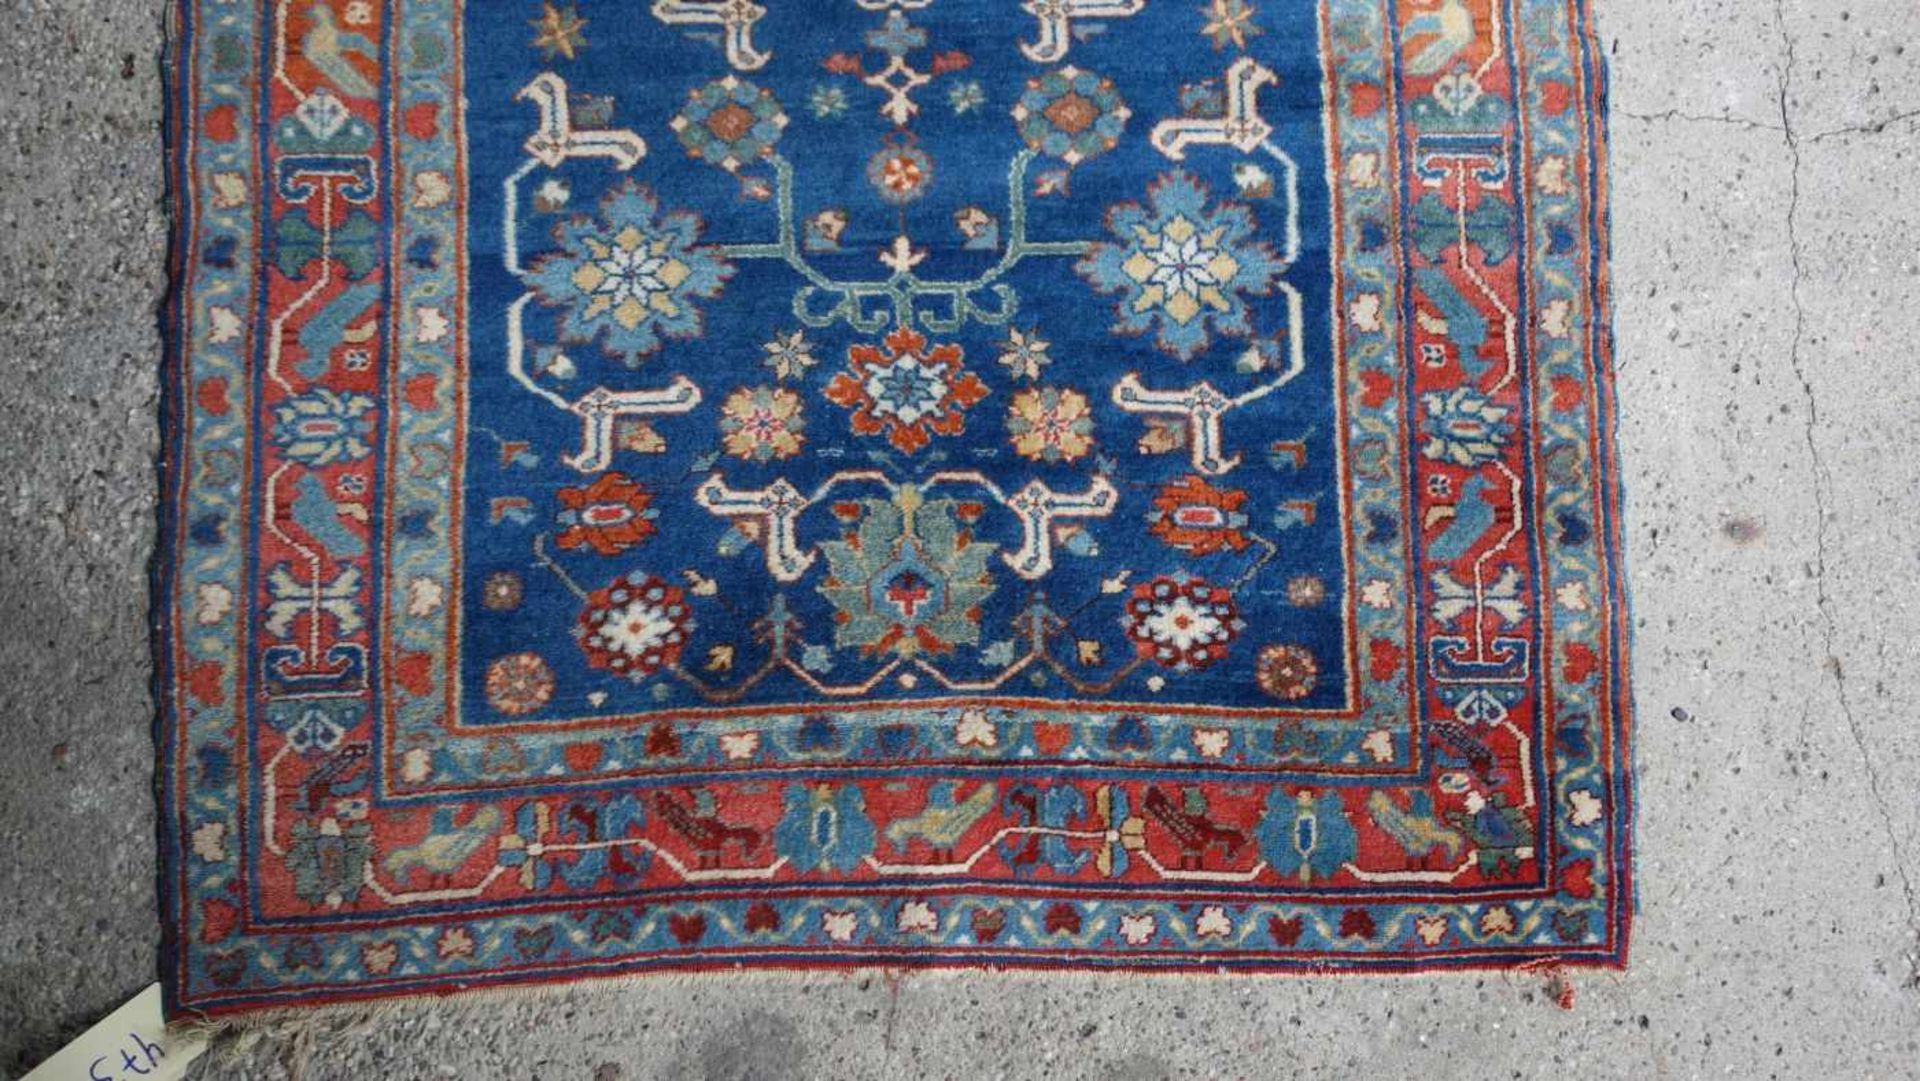 SCHIRVAN TEPPICH (SCHIRWAN) / shirvan rug, Kaukasus. Feiner Teppich mit dichtem Flor; - Image 2 of 8